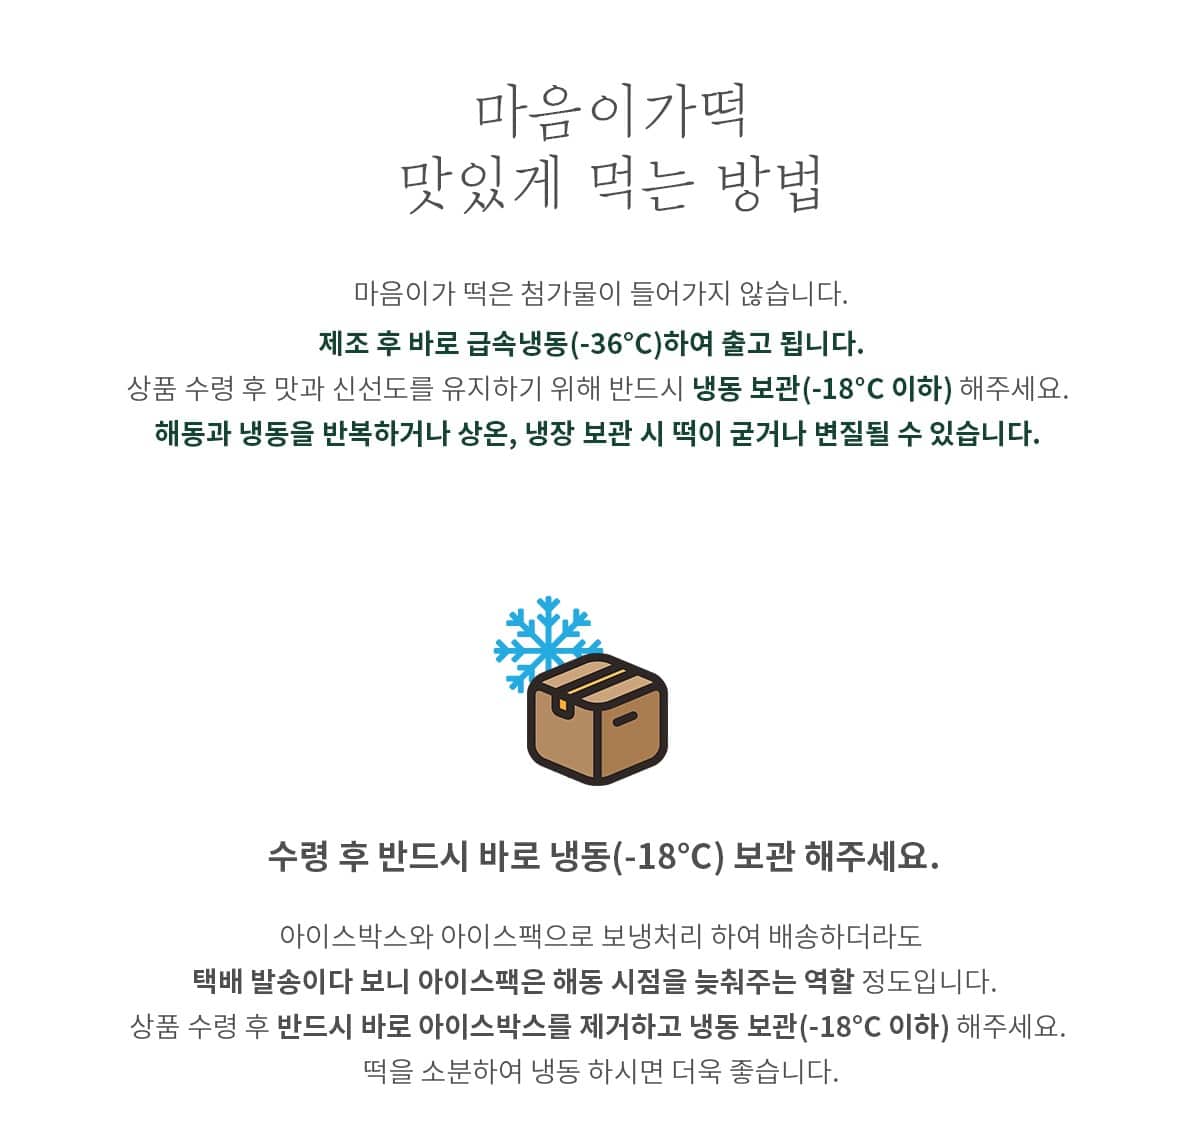 韓國食品-[마음이가] 행복 2호 (이북식인절미+이북식팥인절미+꿀떡+바람떡)(선물세트 1월 29일부터 선착순으로 배송합니다)